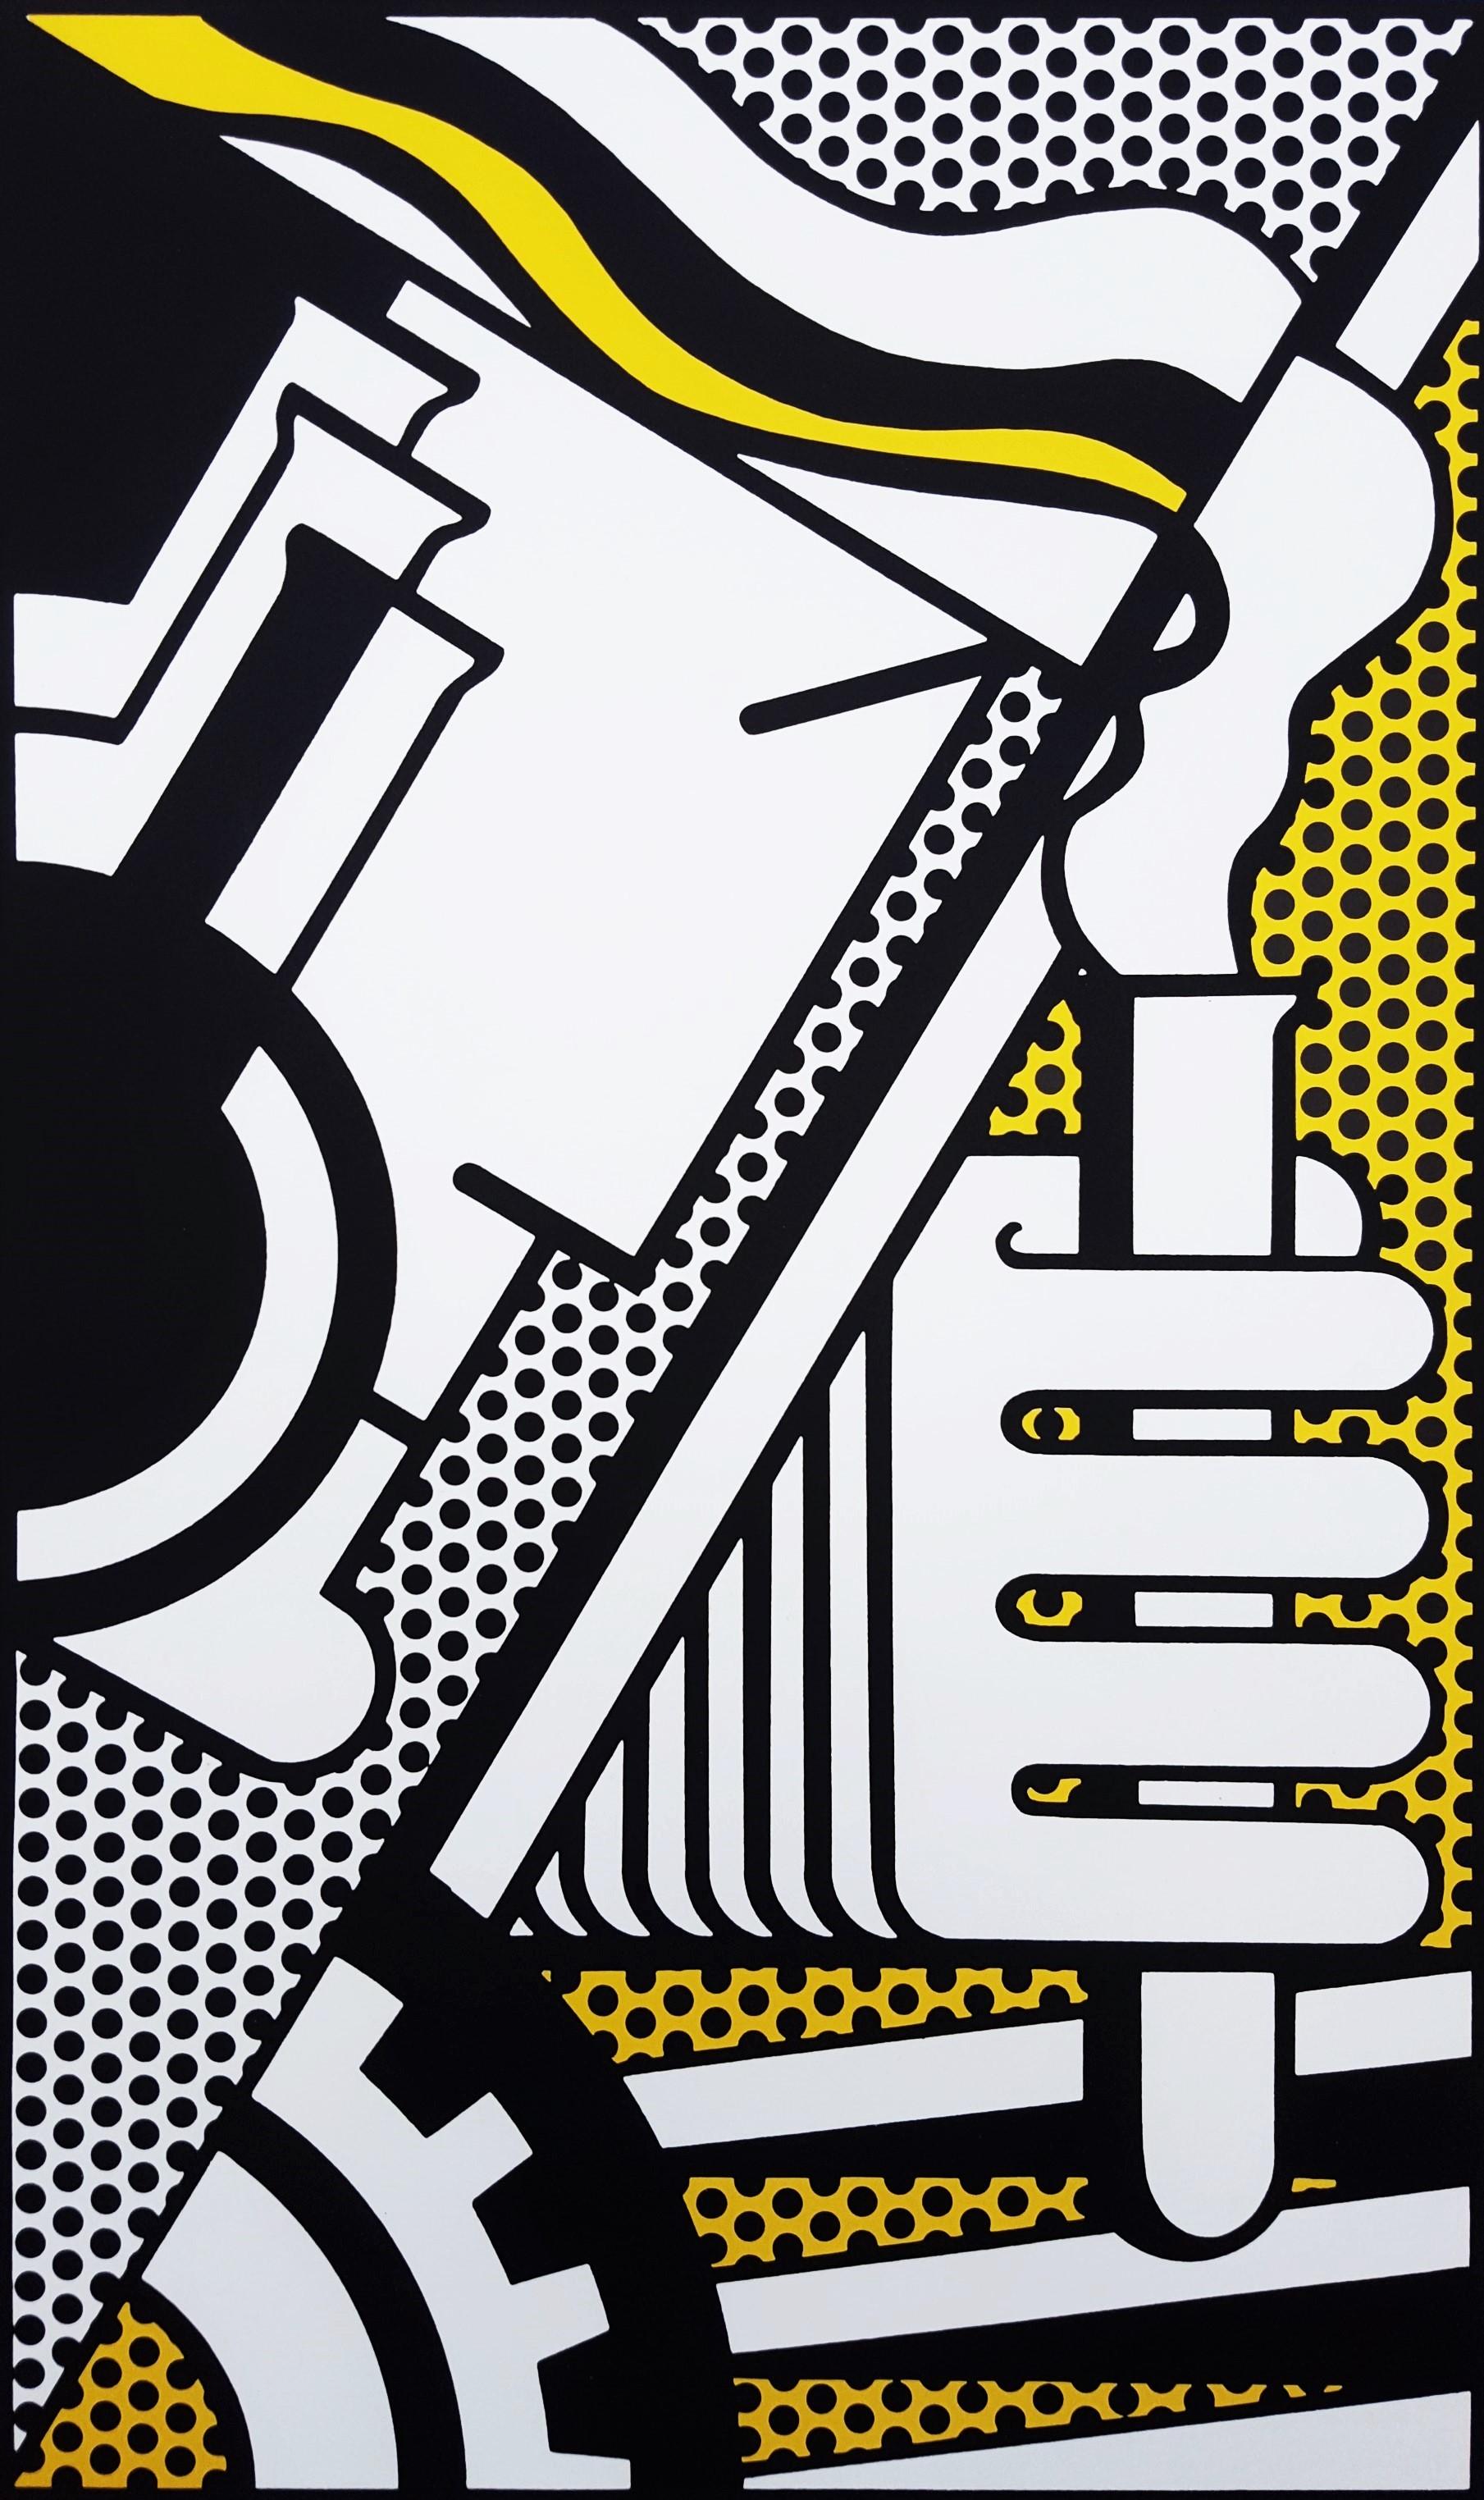 Artistics : Roy Lichtenstein (américain, 1923-1997)
Titre : "Chem 1A"
*Signé et daté par Lichtenstein au crayon en bas à droite
Année : 1970
Support : Sérigraphie originale sur papier spécial Arjomari
Édition limitée : 32/100, (il y a eu aussi 10